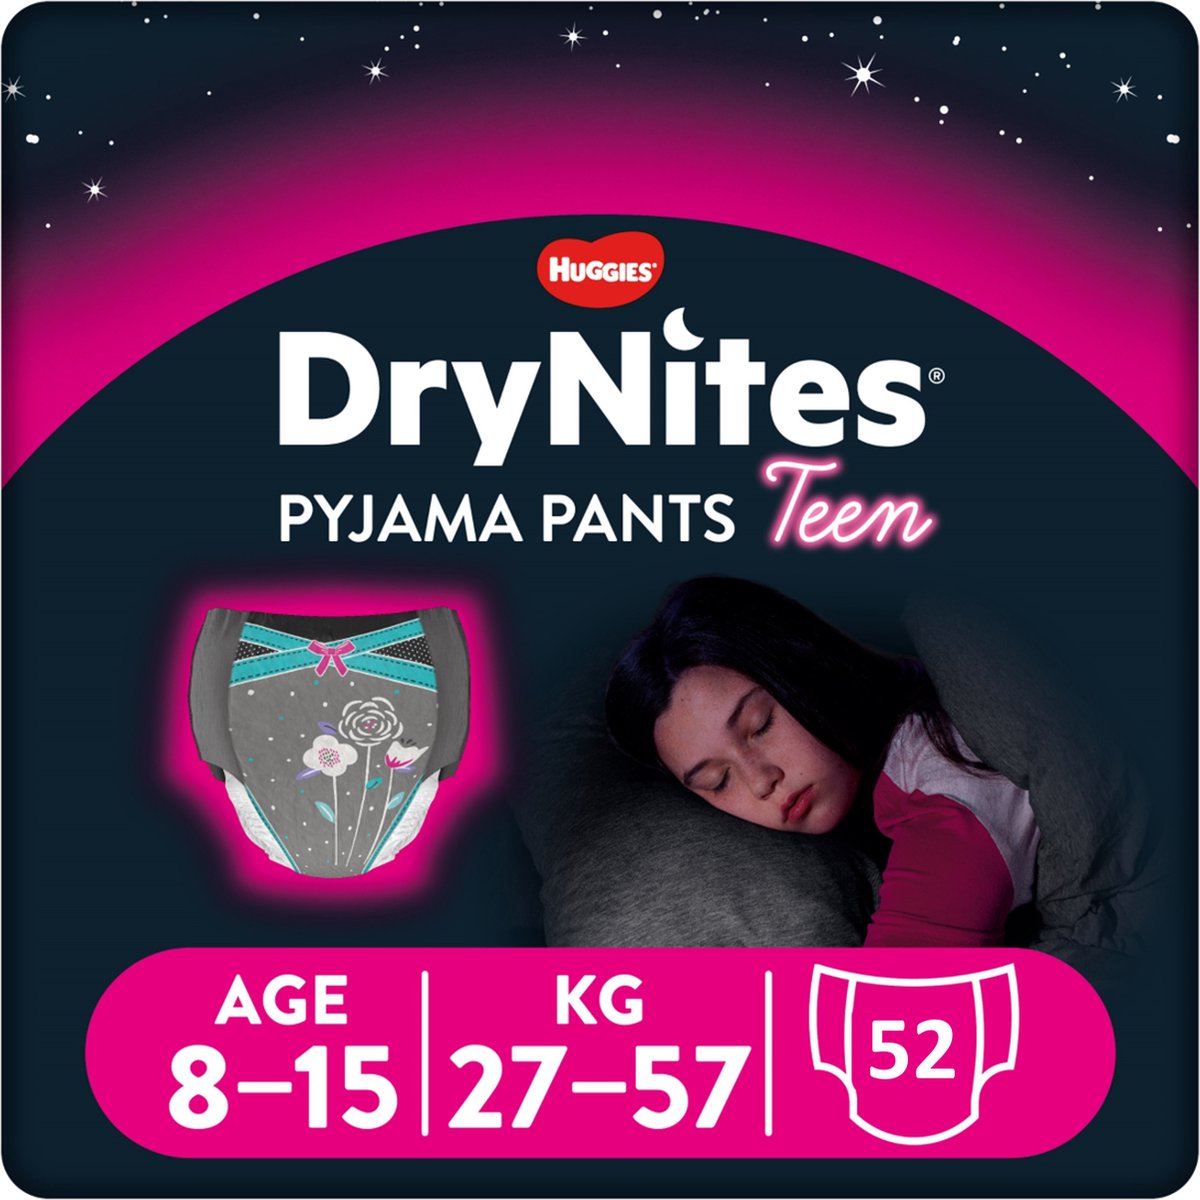 DryNites luierbroekjes - meisjes - 8 tot 15 jaar (27 - 57 kg) - 52 stuks - extra voordeel - DryNites